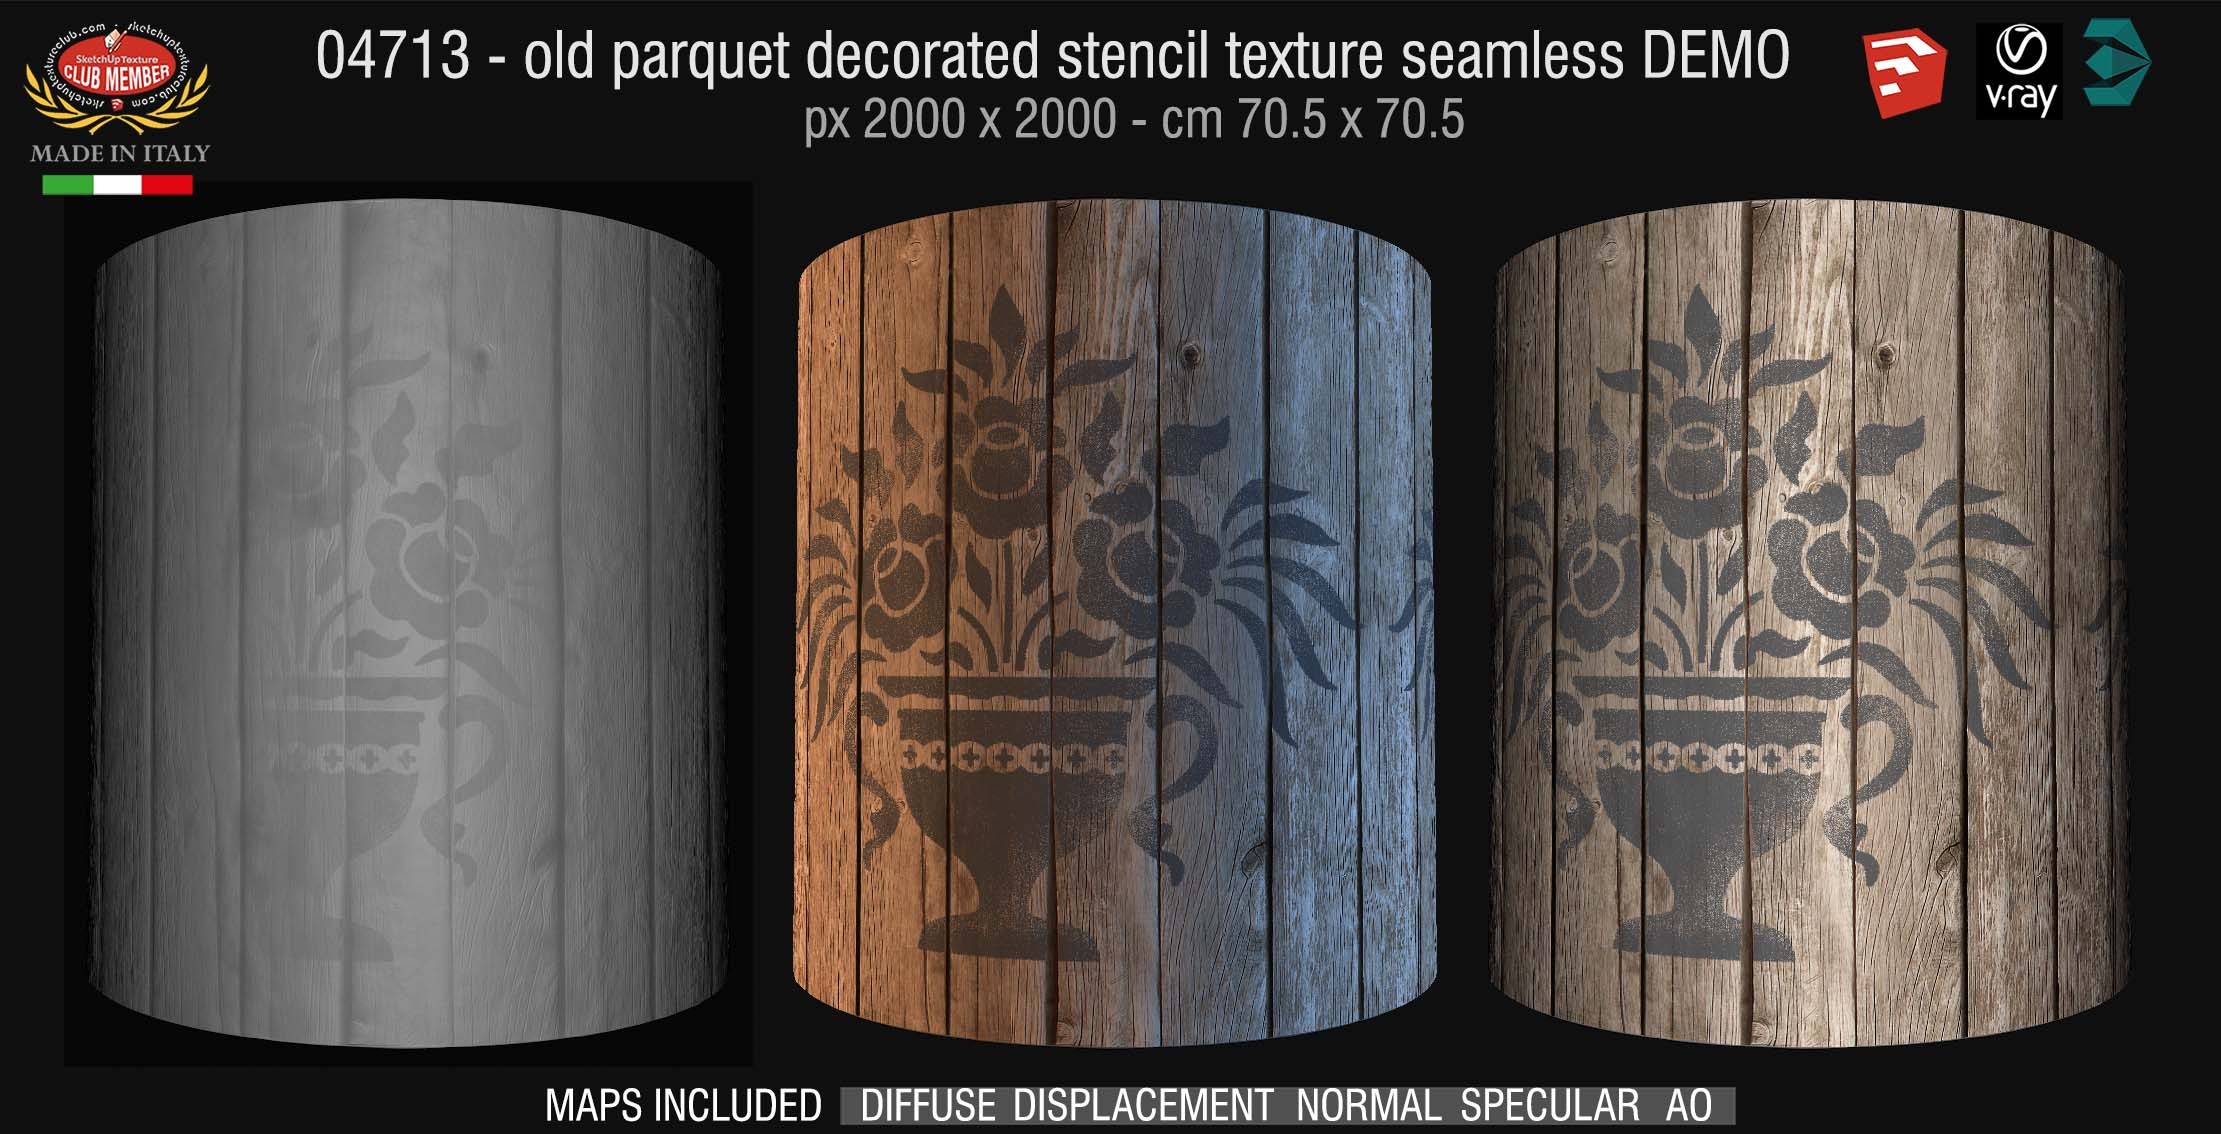 04713 HR Parquet decorated stencil texture seamless + maps DEMO